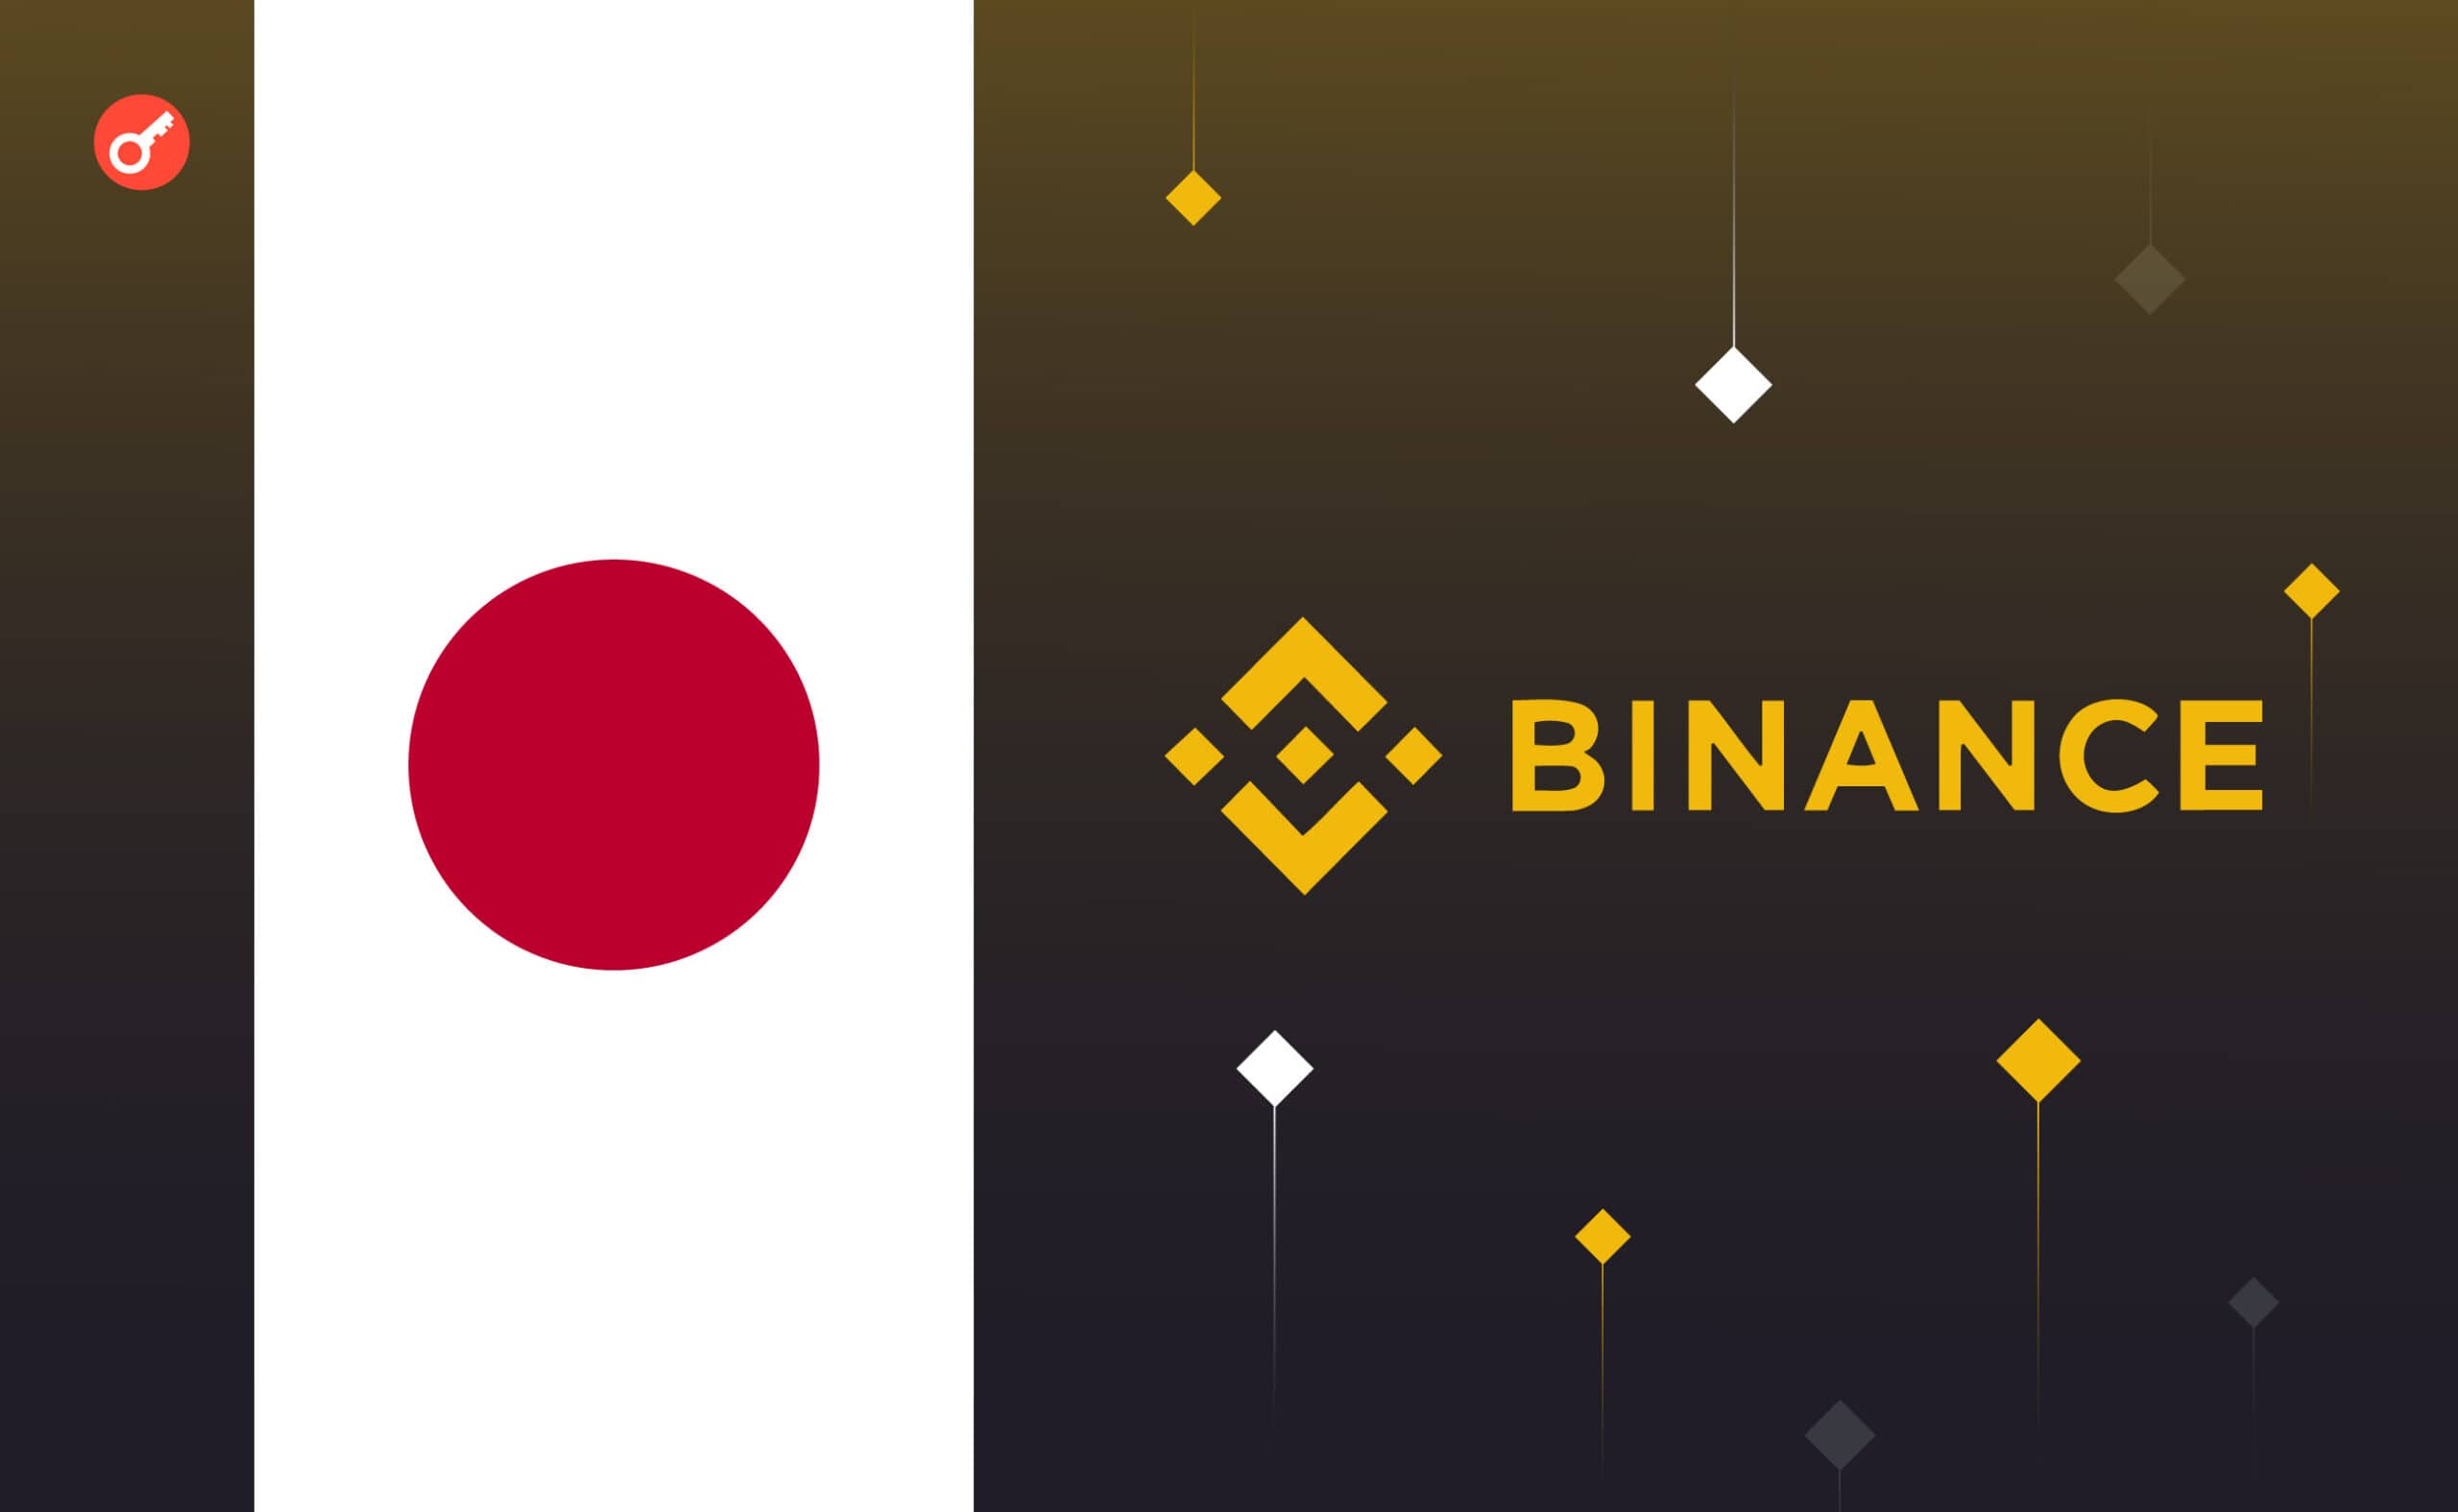 Binance JAPAN оголосили дату запуску. Головний колаж новини.